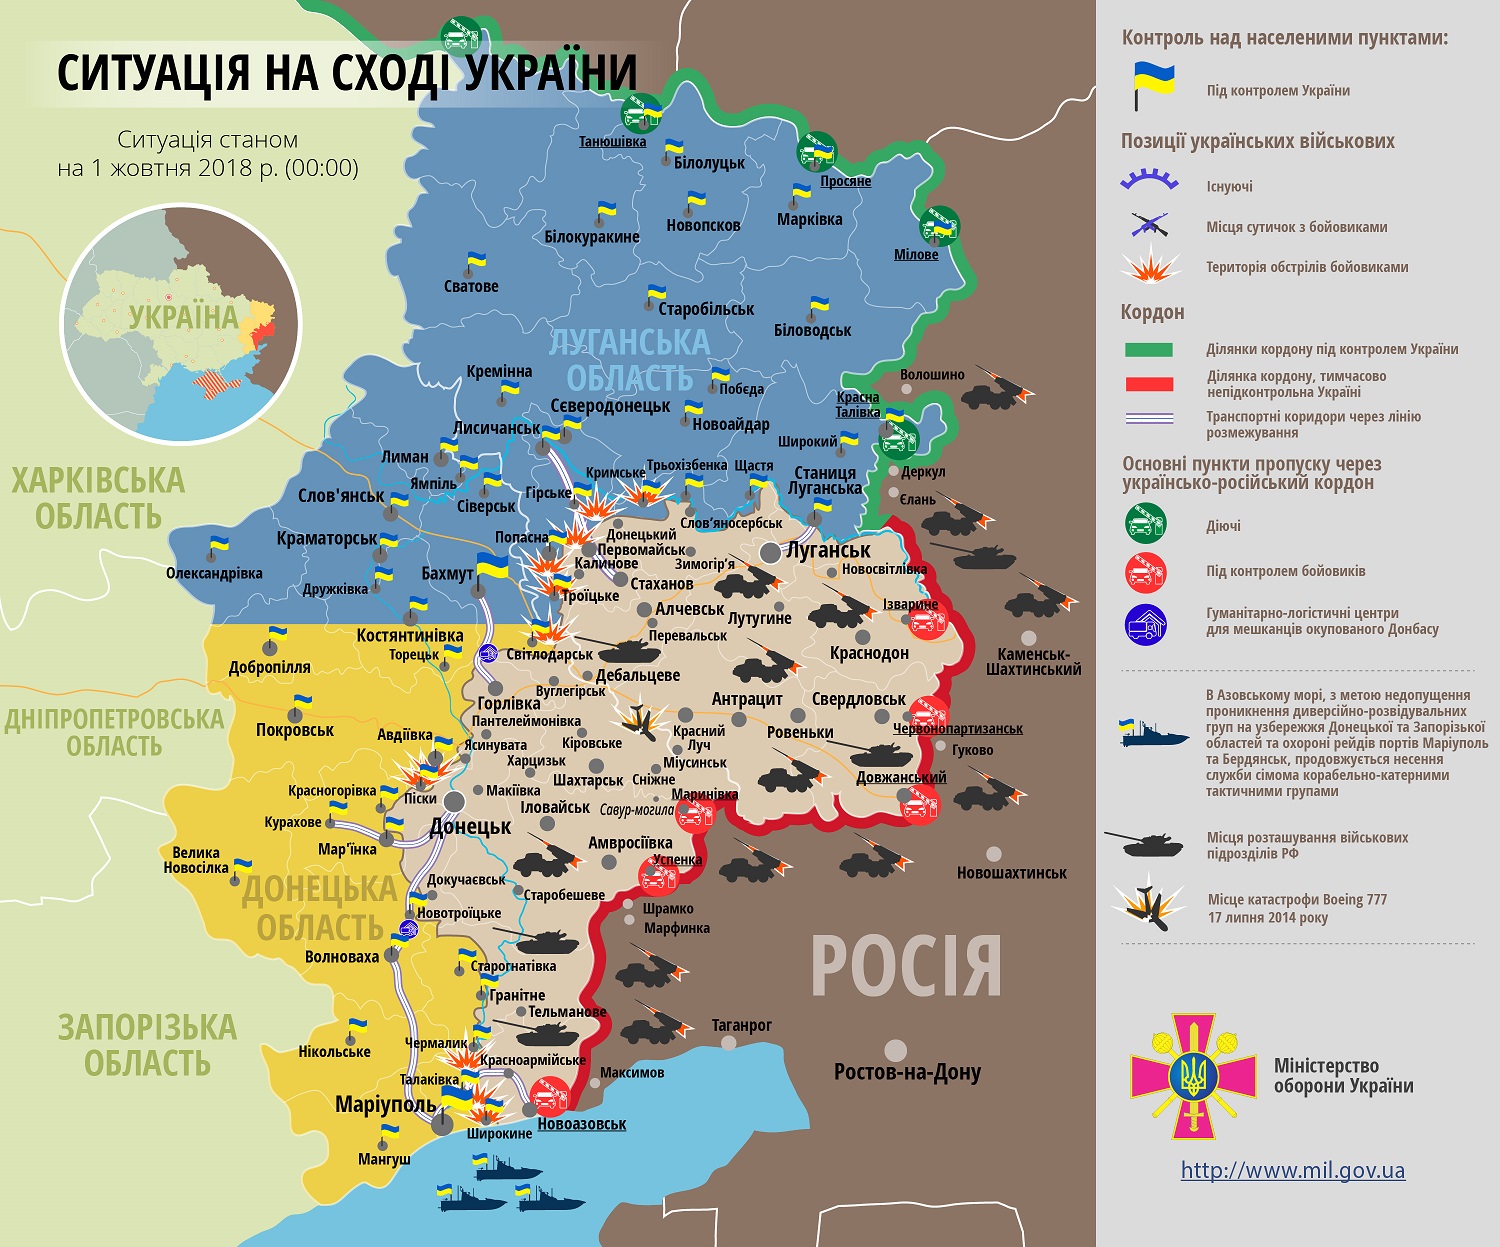 На Донбассе мощный взрыв убил сразу 10 наемников армии РФ: боевая сводка и карта ООС от 1 октября - кадры